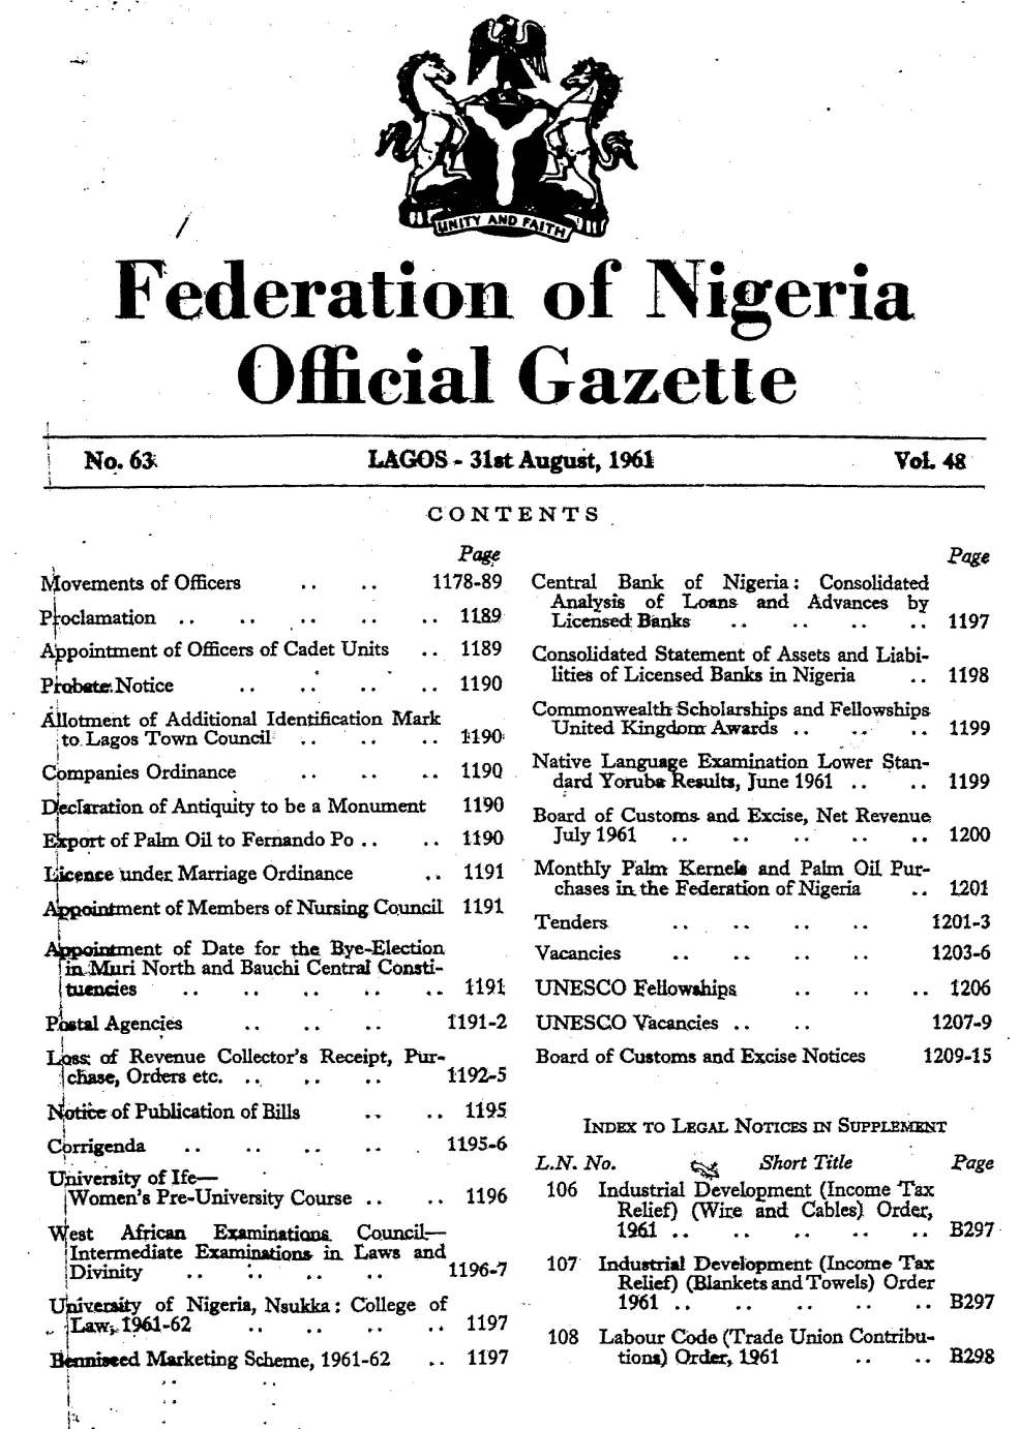 Federation of Nigeria Official Gazette